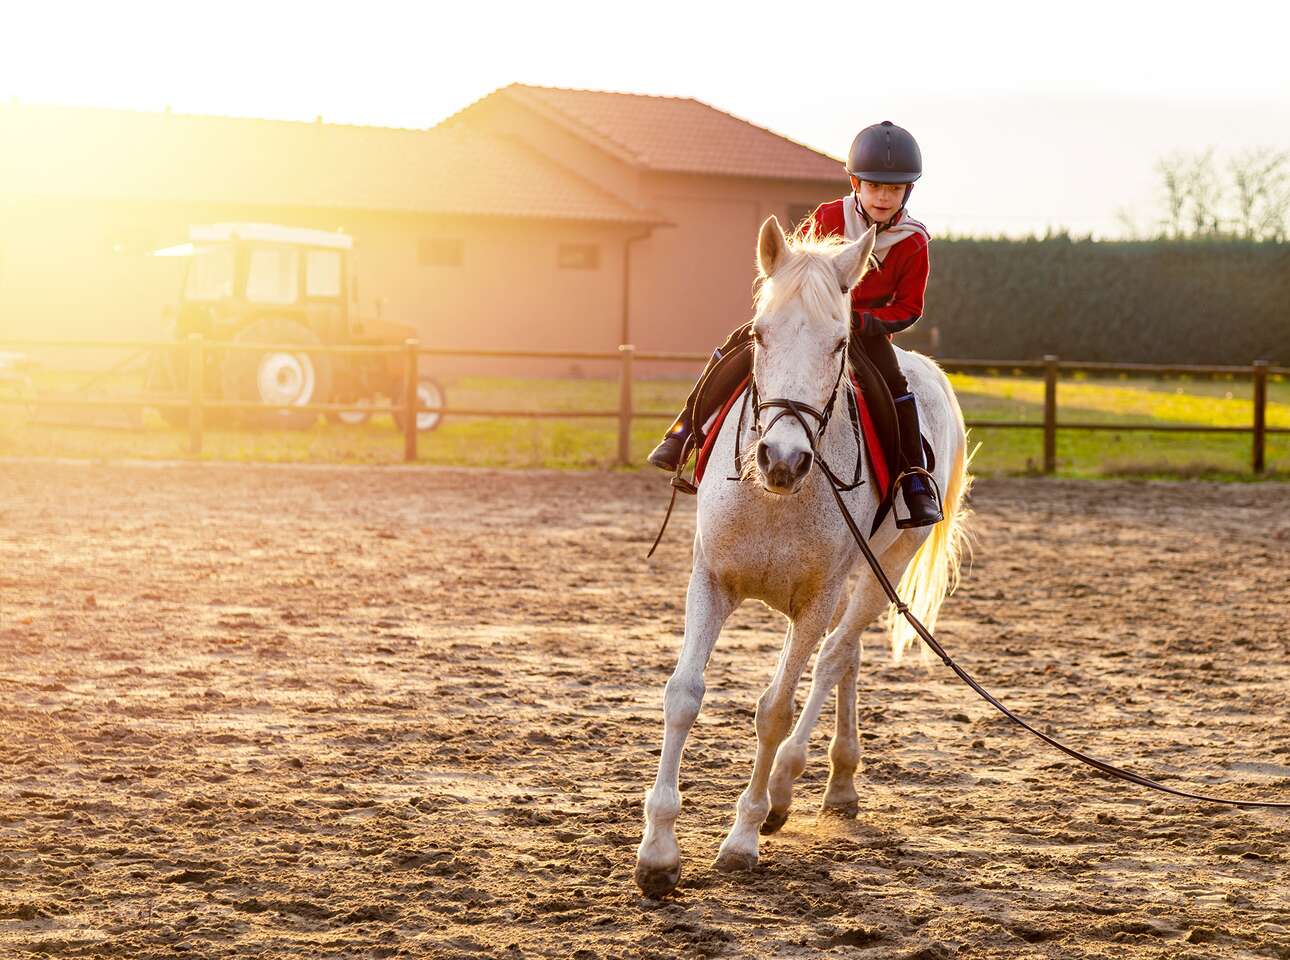 OBĽÚBENÉ: Lekcie jazdenia na koni s inštruktorom pre deti aj dospelých v Bratislave